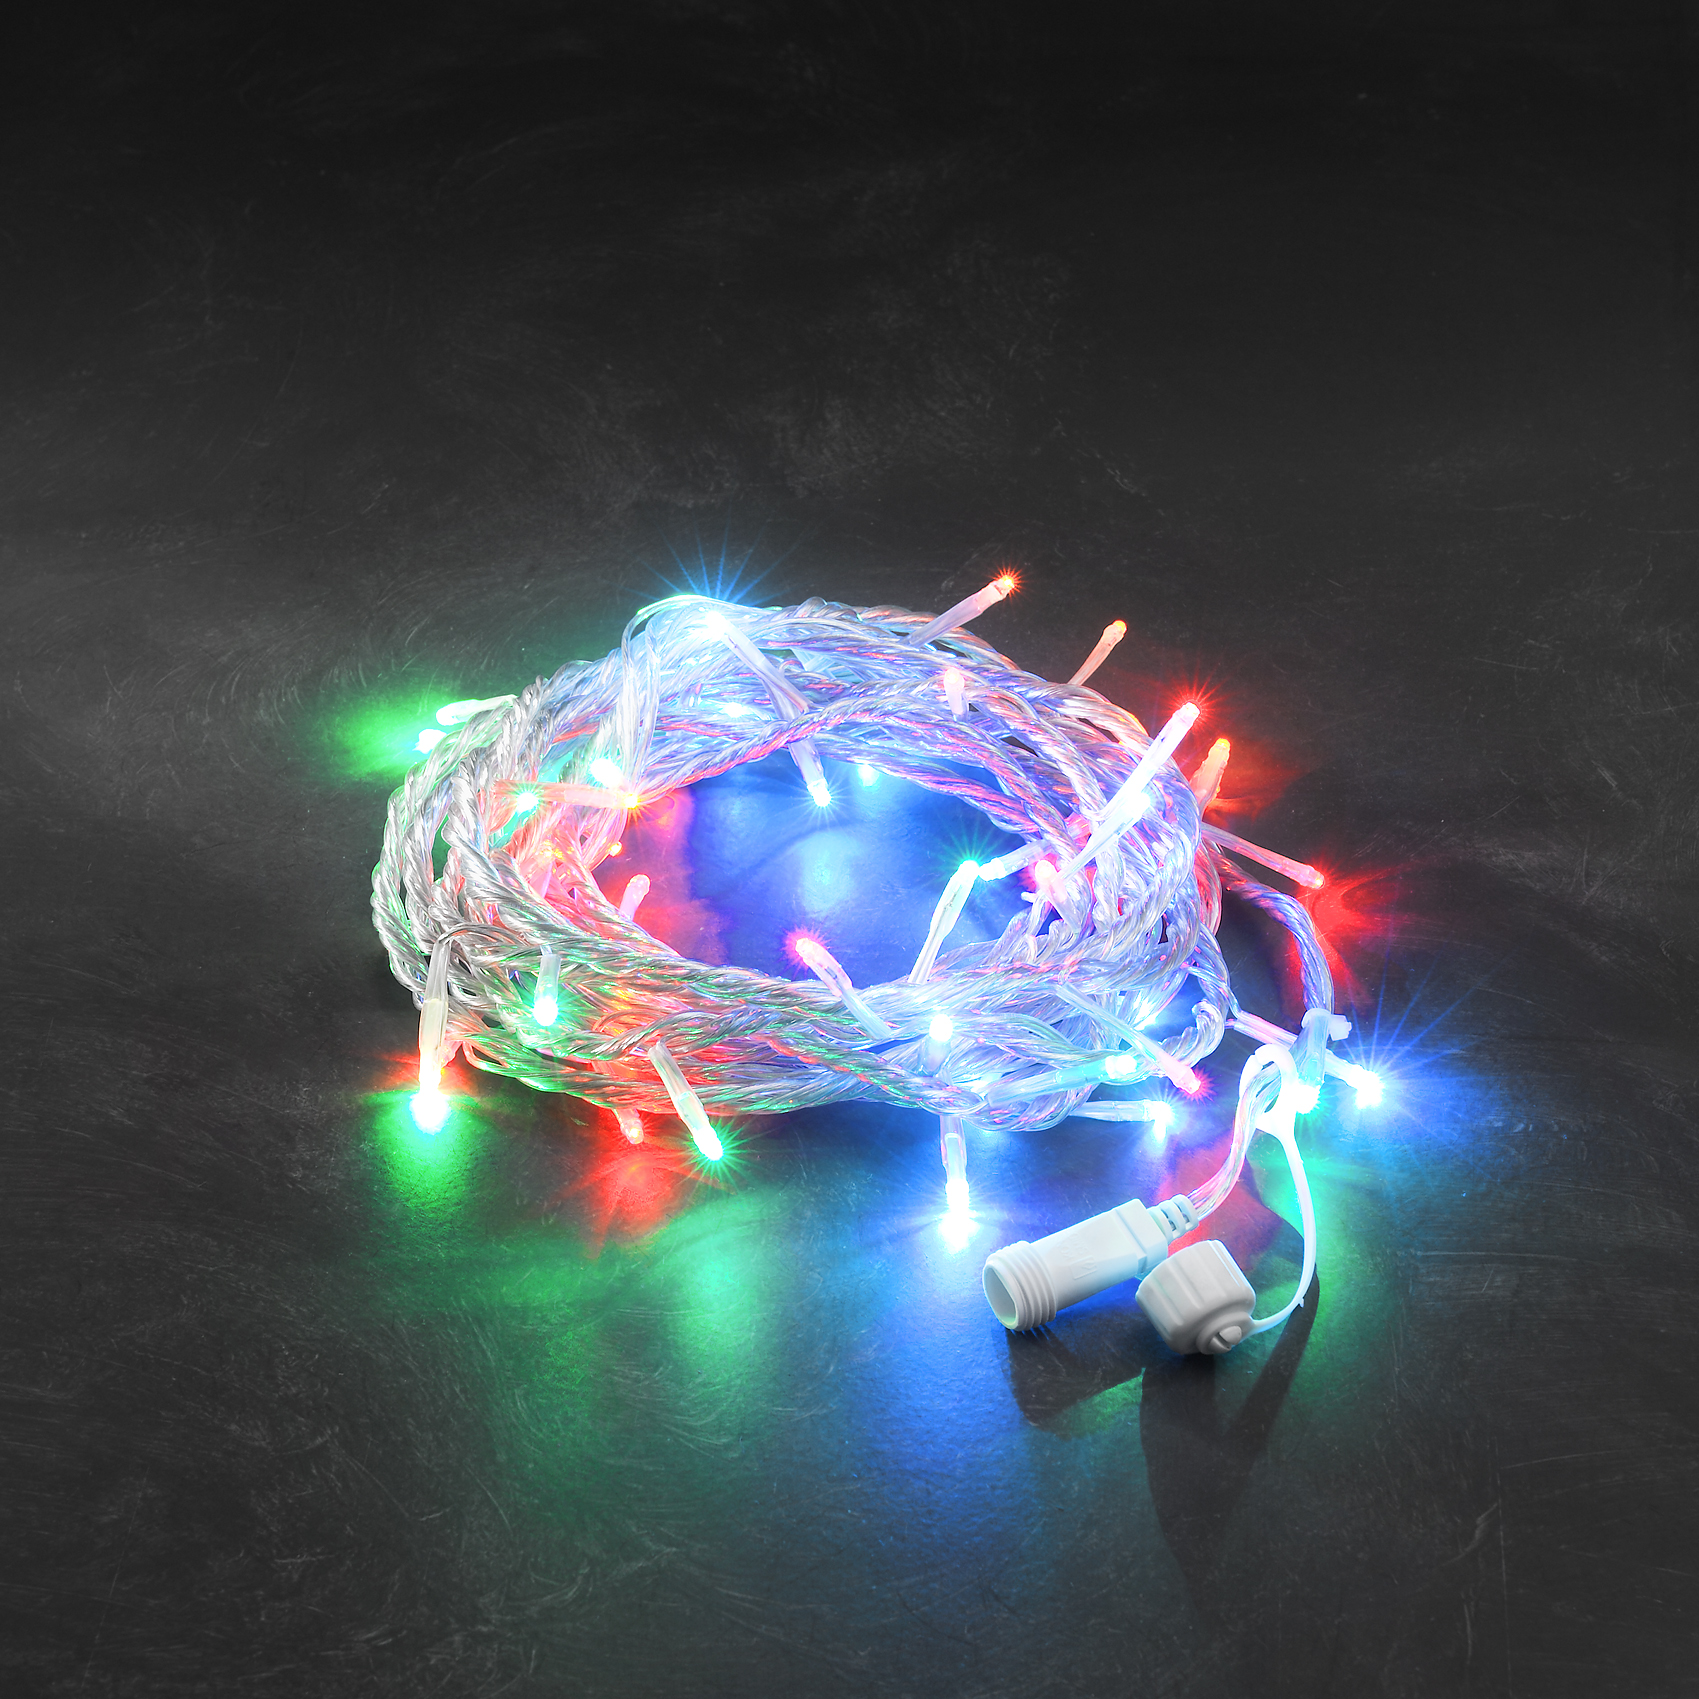 LED Sistem 24V - sirag cu 100 de LED-uri, lumina multicolora, 10m lungime